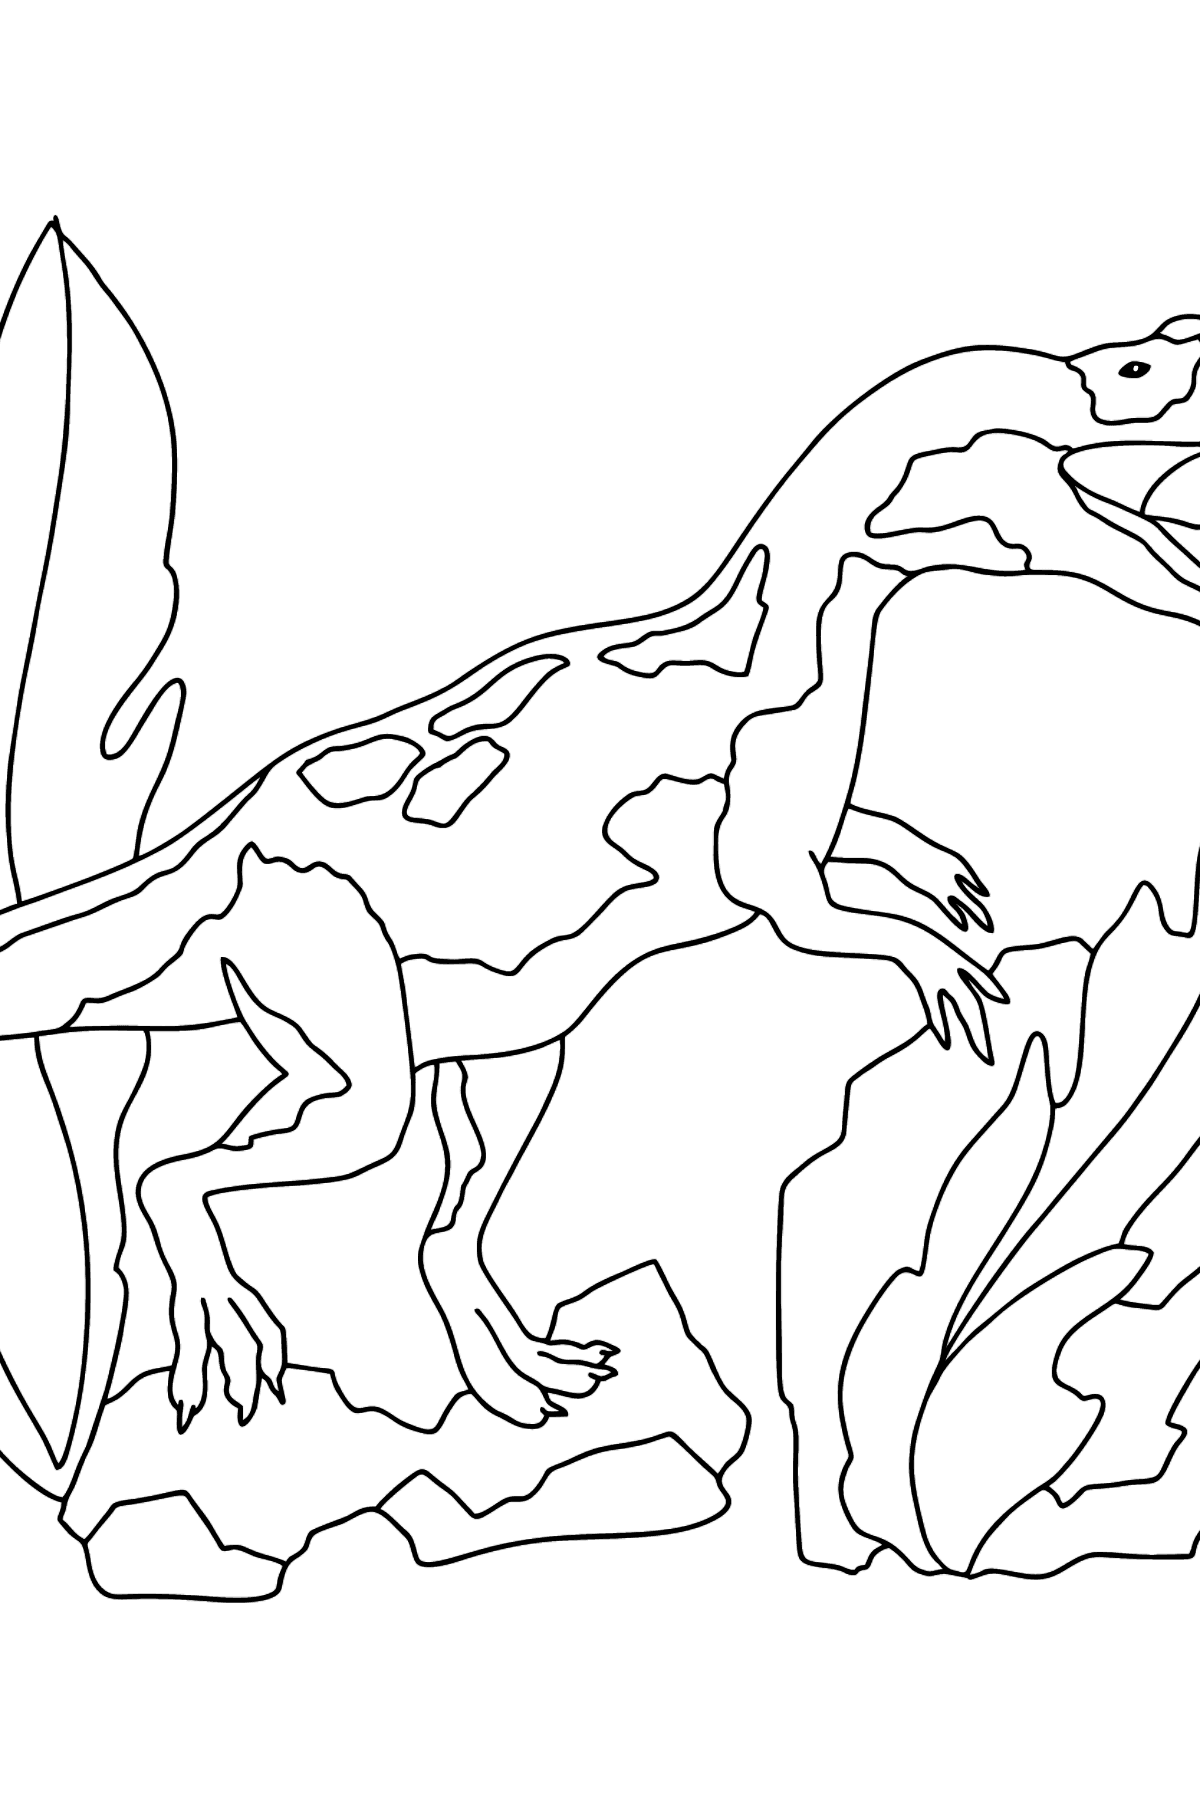 Раскраска динозавров юрского периода (сложно) - Картинки для Детей